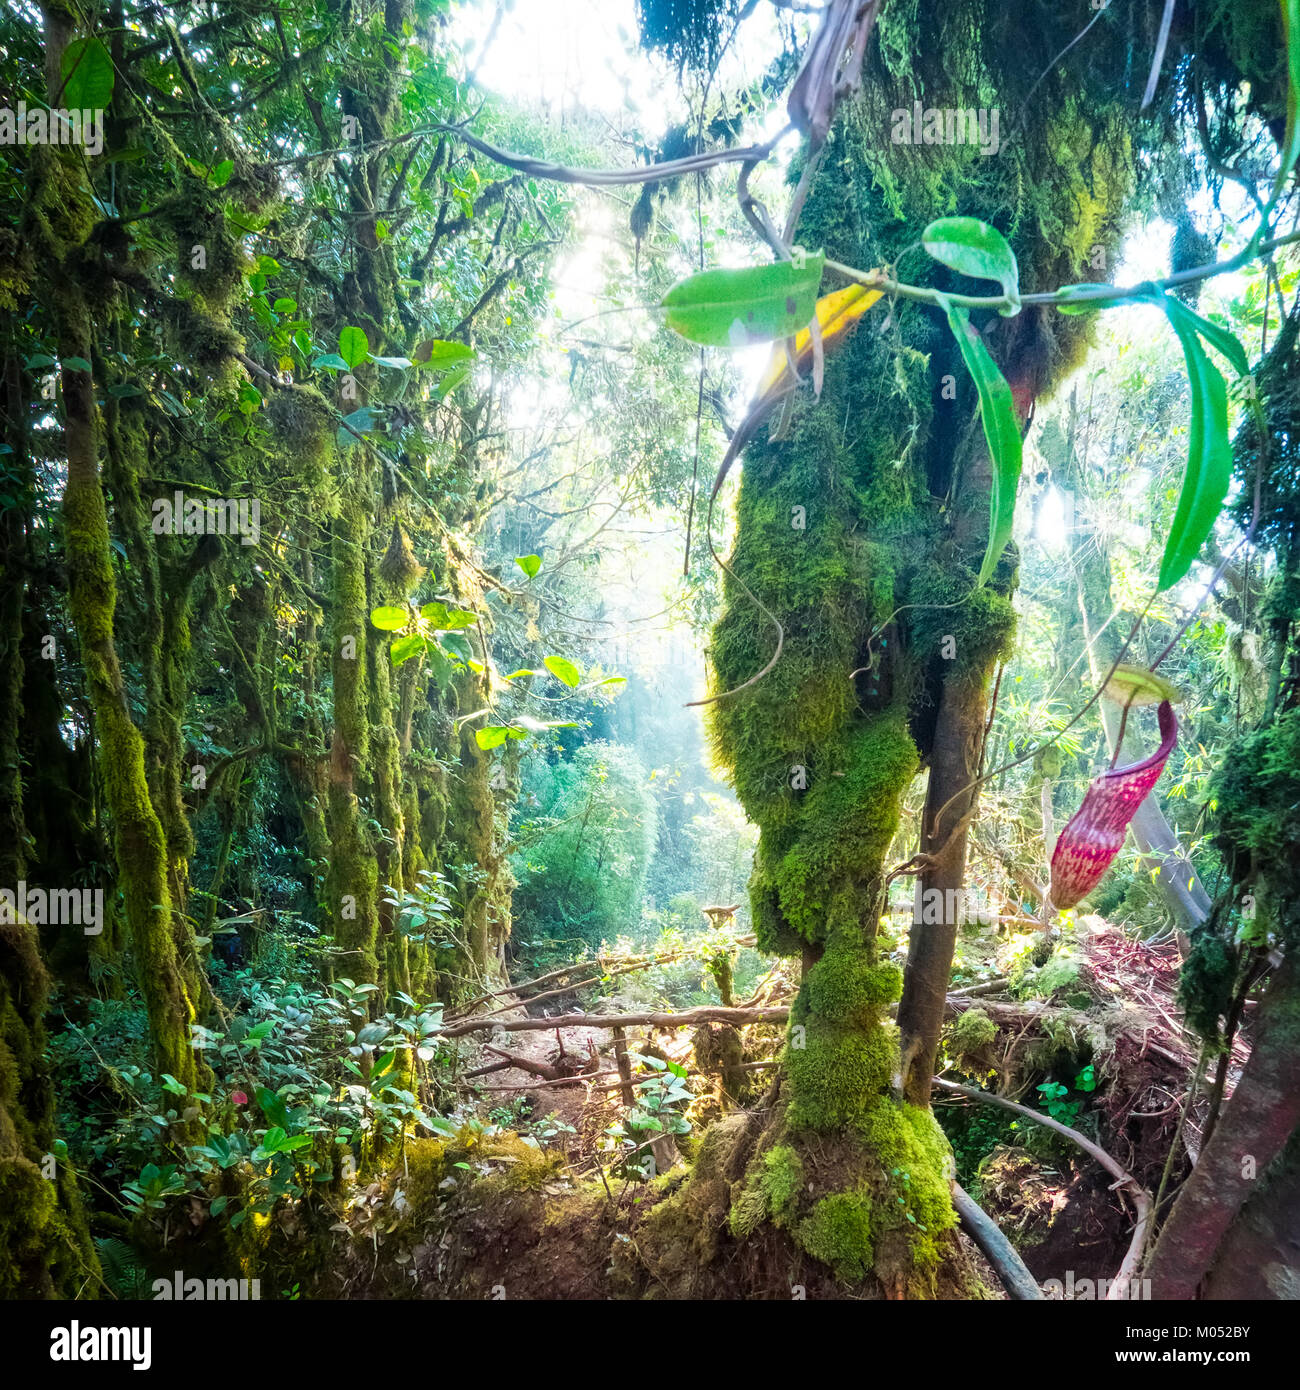 Tropical forêt moussue mystique de fantaisie avec une végétation tropicale et Nepenthes pitcher, fleurs plantes carnivores exotiques poussant parmi les mousses moelleuses Banque D'Images